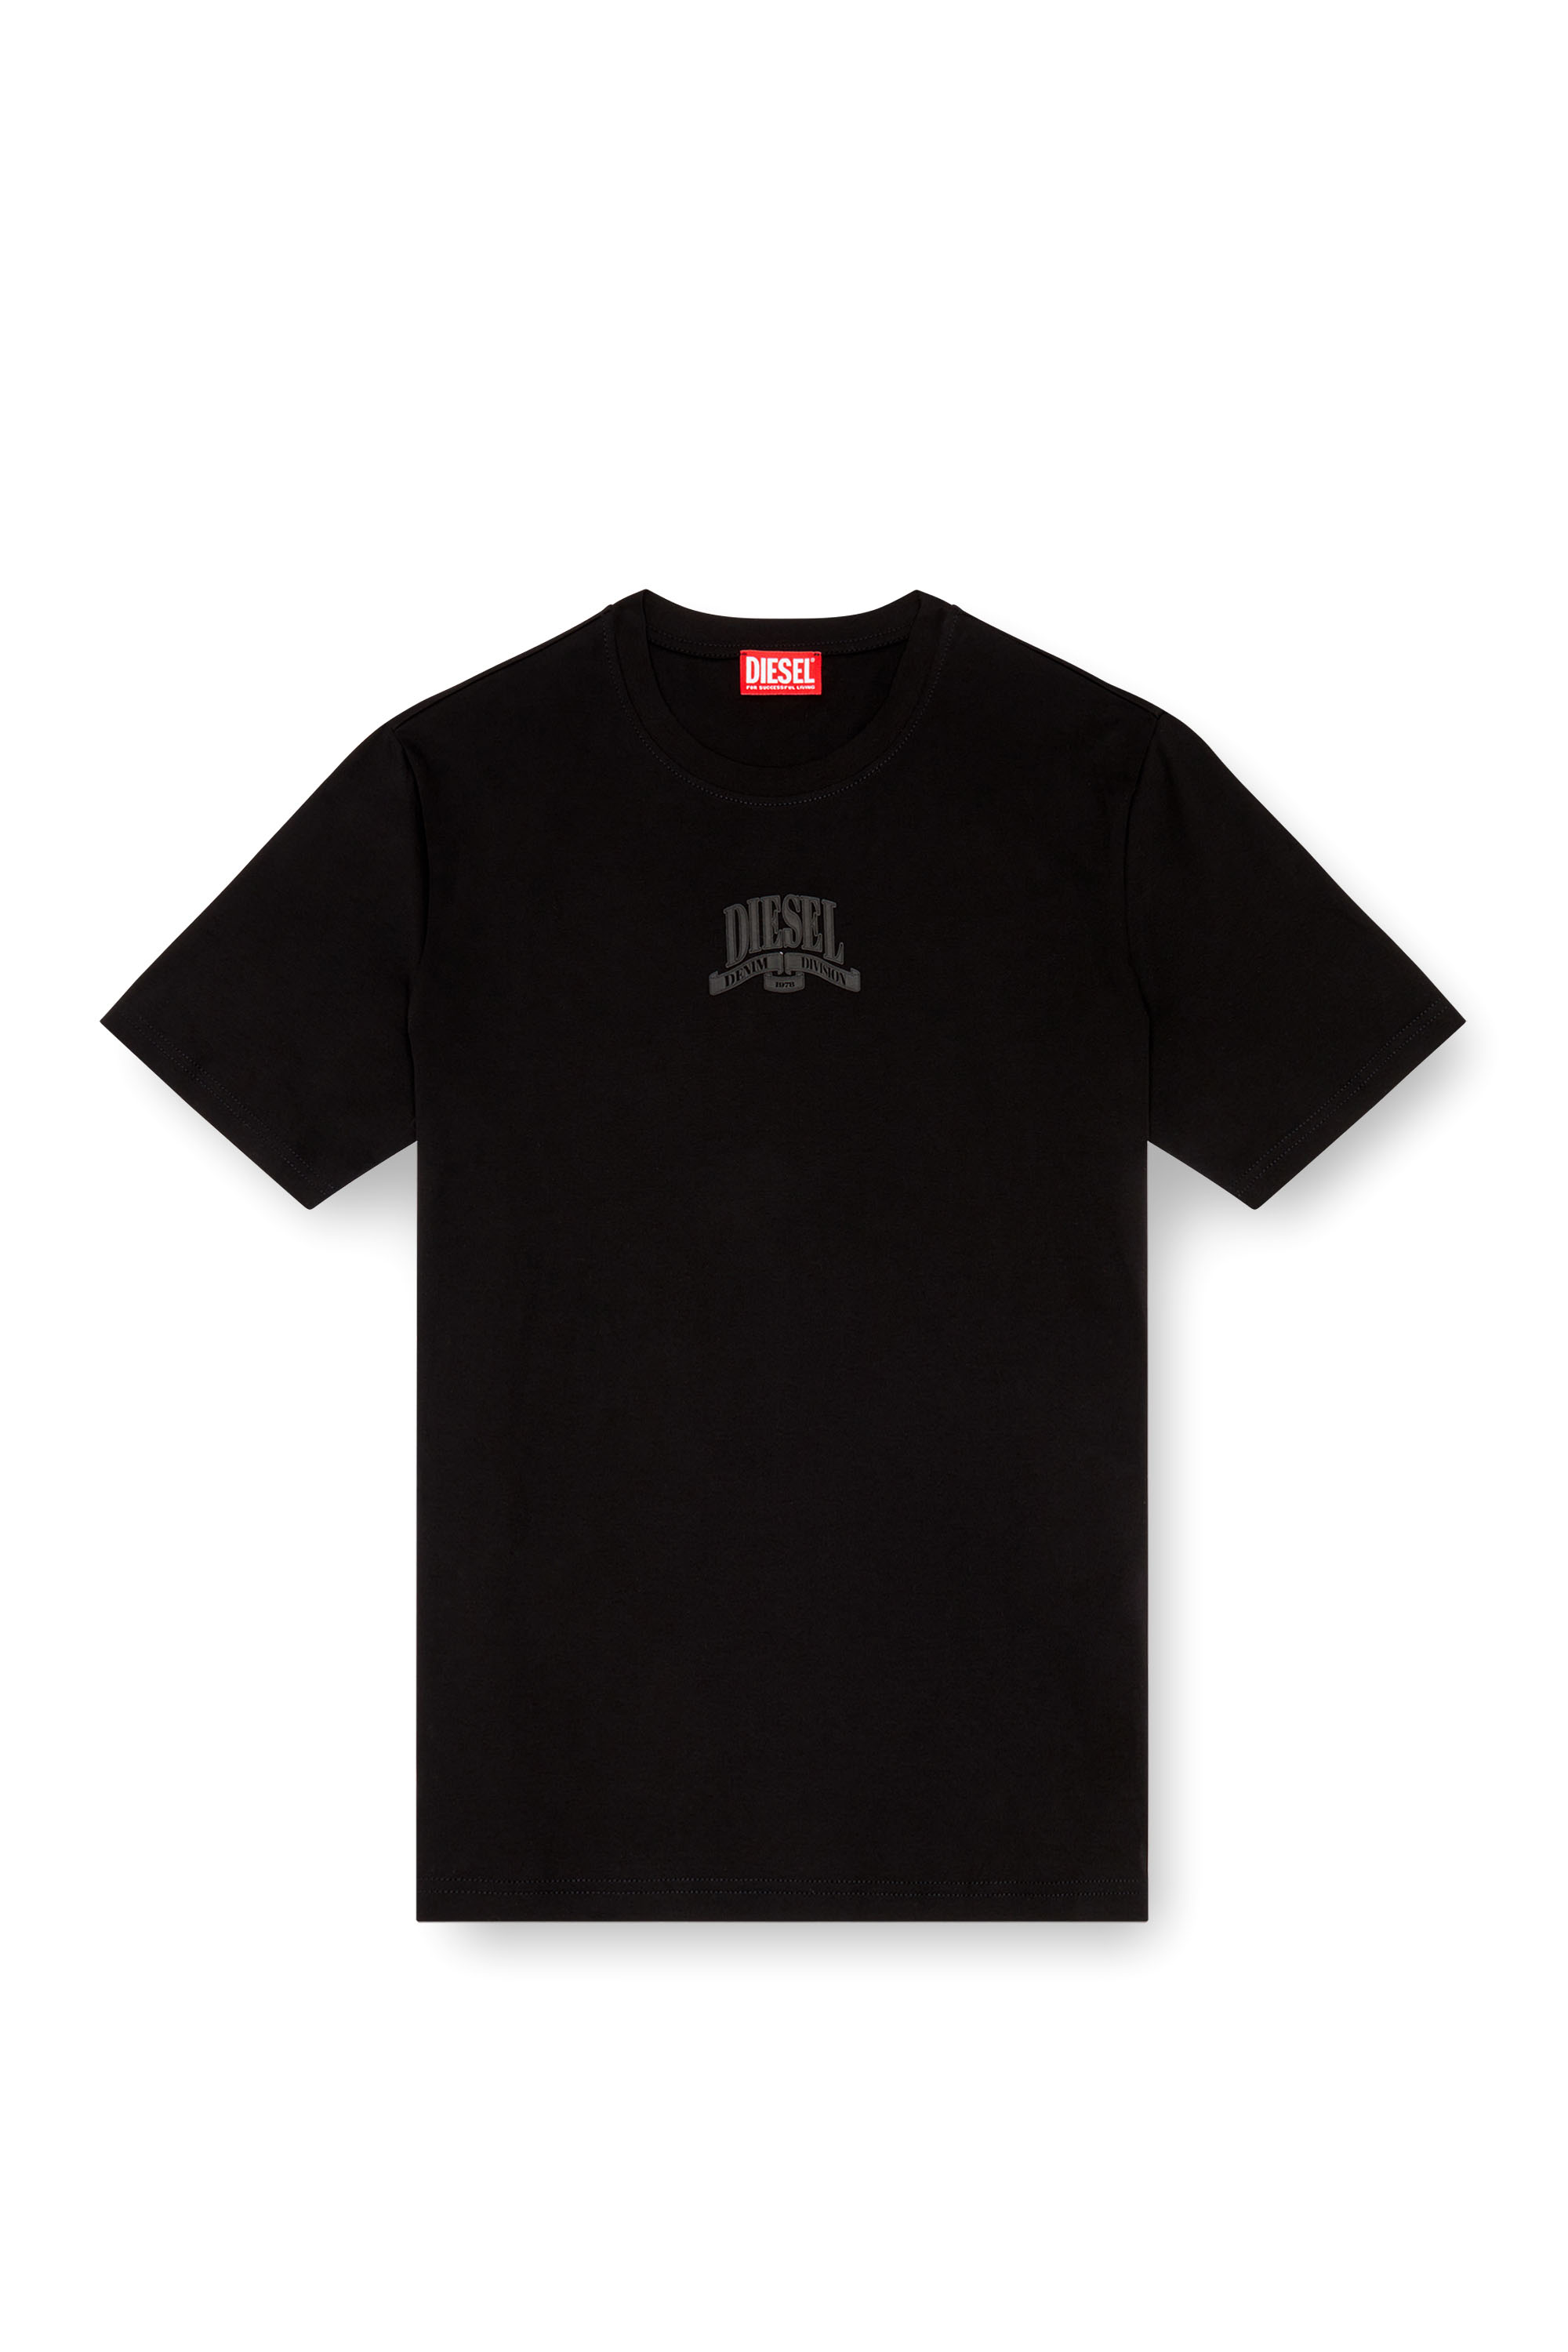 Diesel - T-MADJUST-K1, Hombre Camiseta de interlock con estampado Diesel a tono in Negro - Image 4